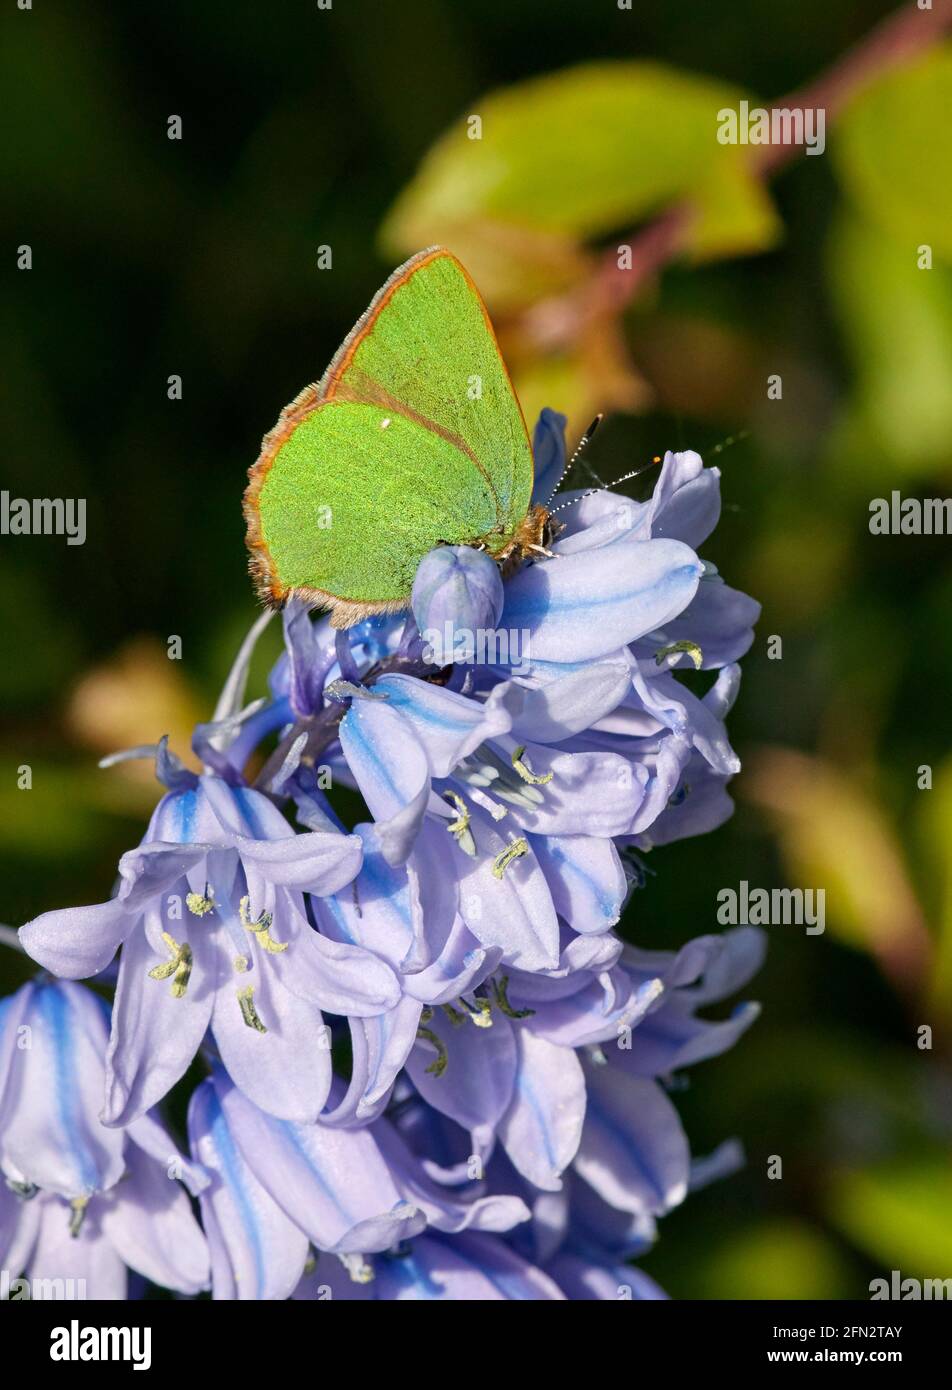 Serre perchée sur les fleurs de Bluebell. Réserve naturelle des réservoirs de Molesey, West Molesey, Surrey, Royaume-Uni. Banque D'Images